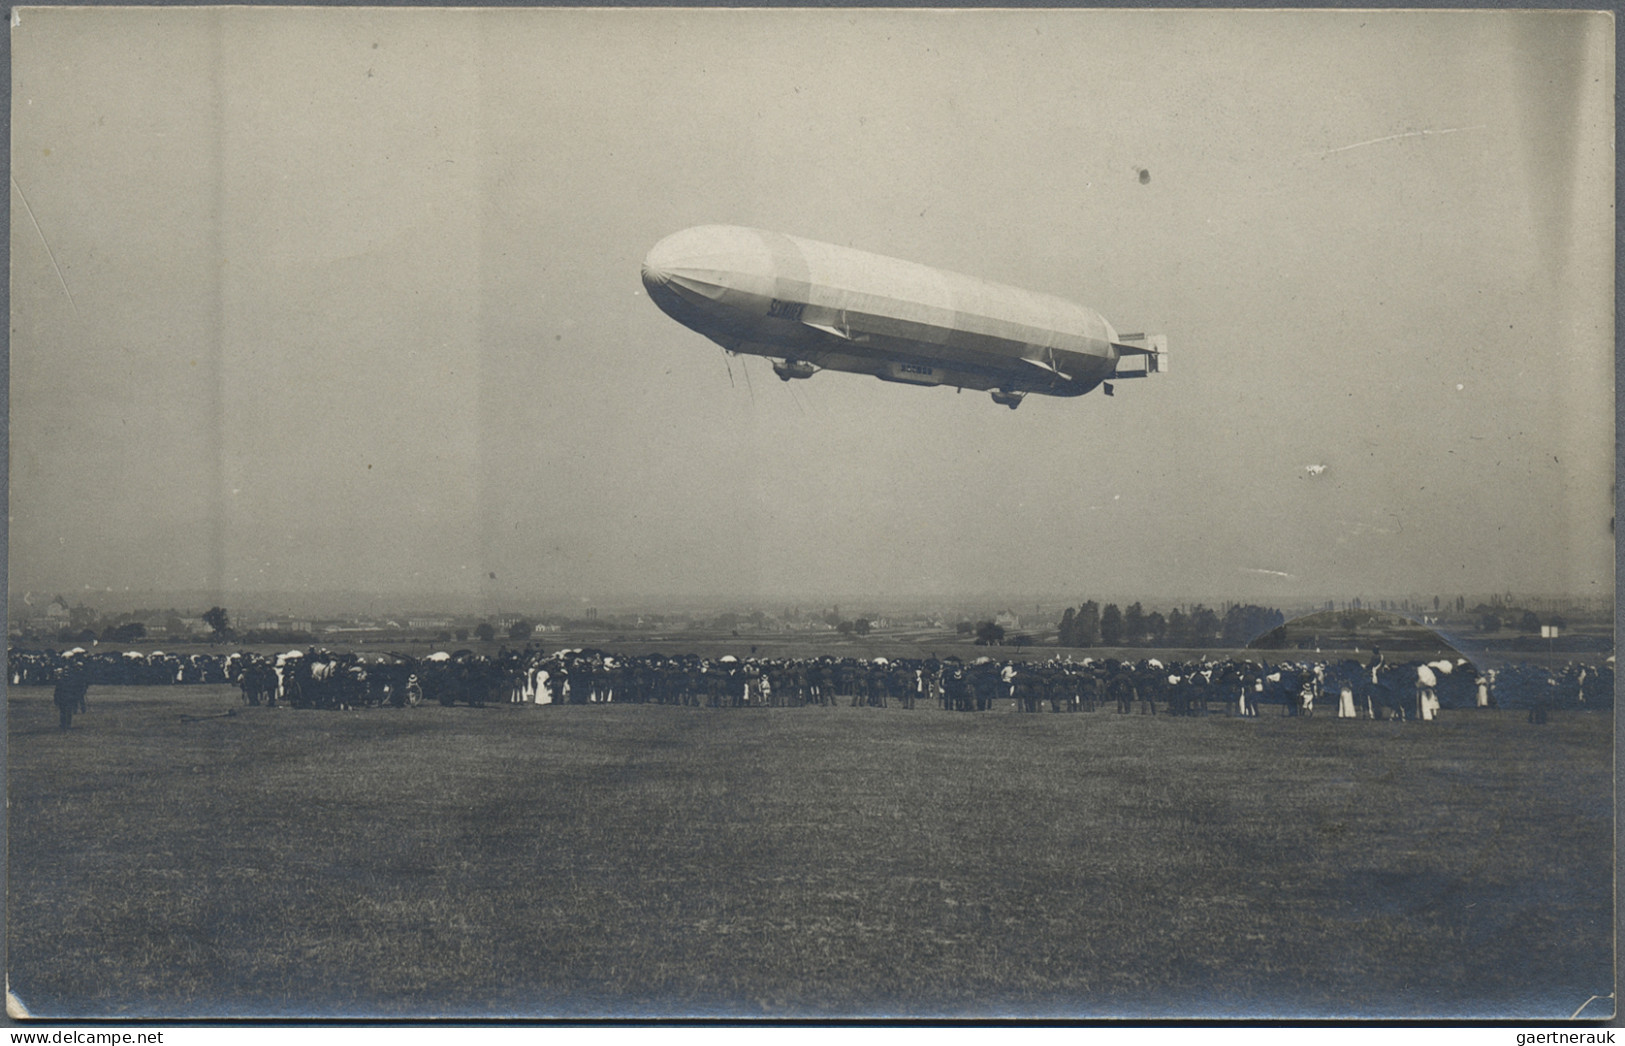 Ansichtskarten: Motive: ZEPPELIN: Over 140 Zeppelin postcards, mostly Real Photo